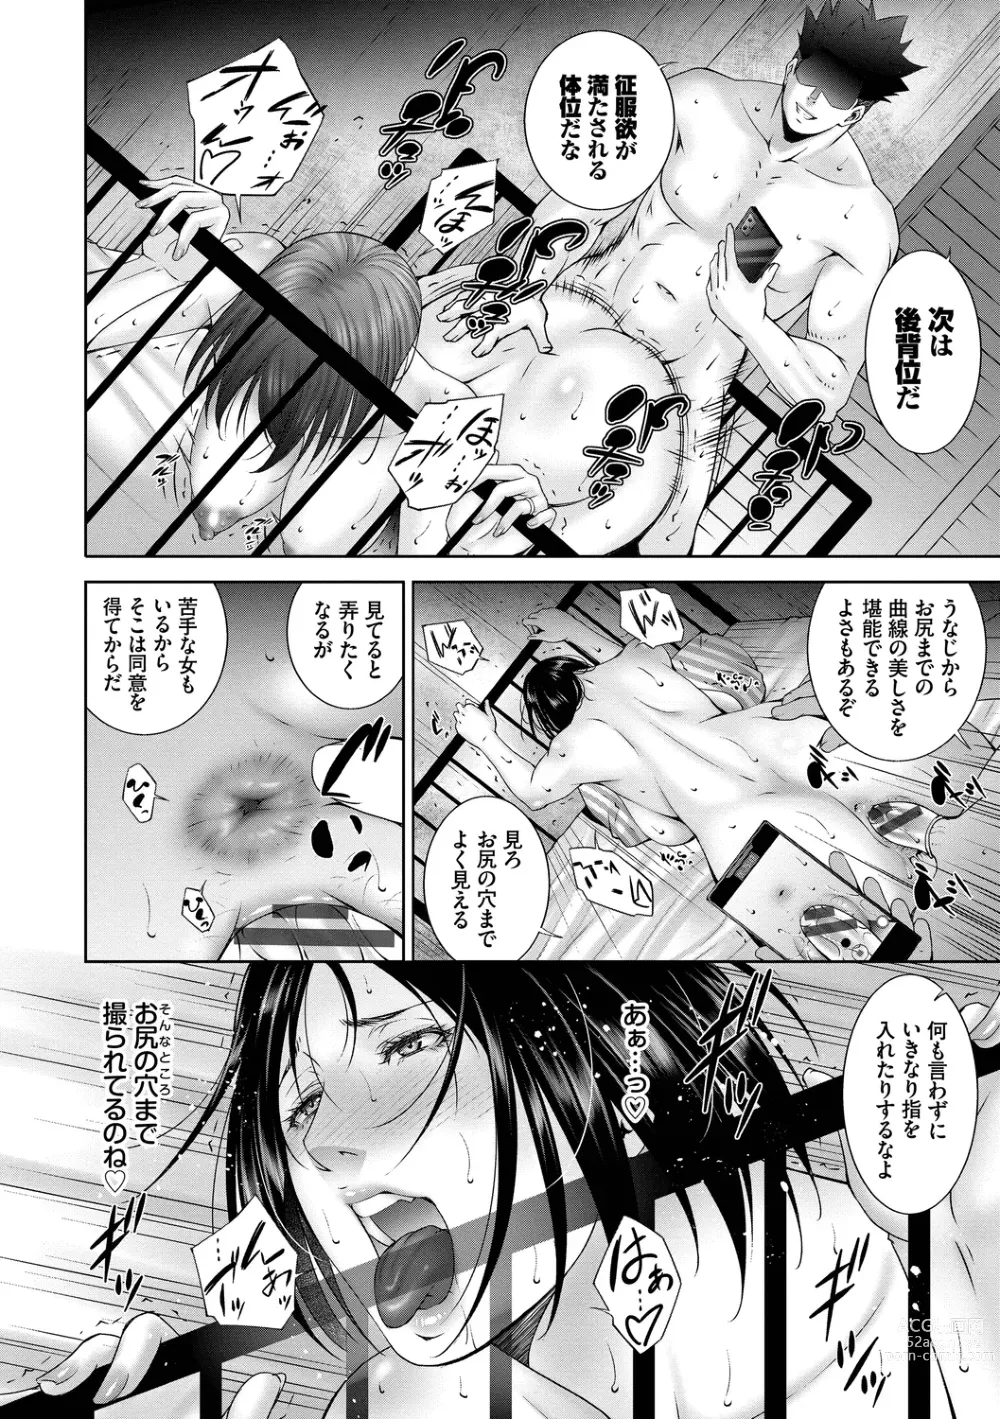 Page 16 of manga Lust Maternity